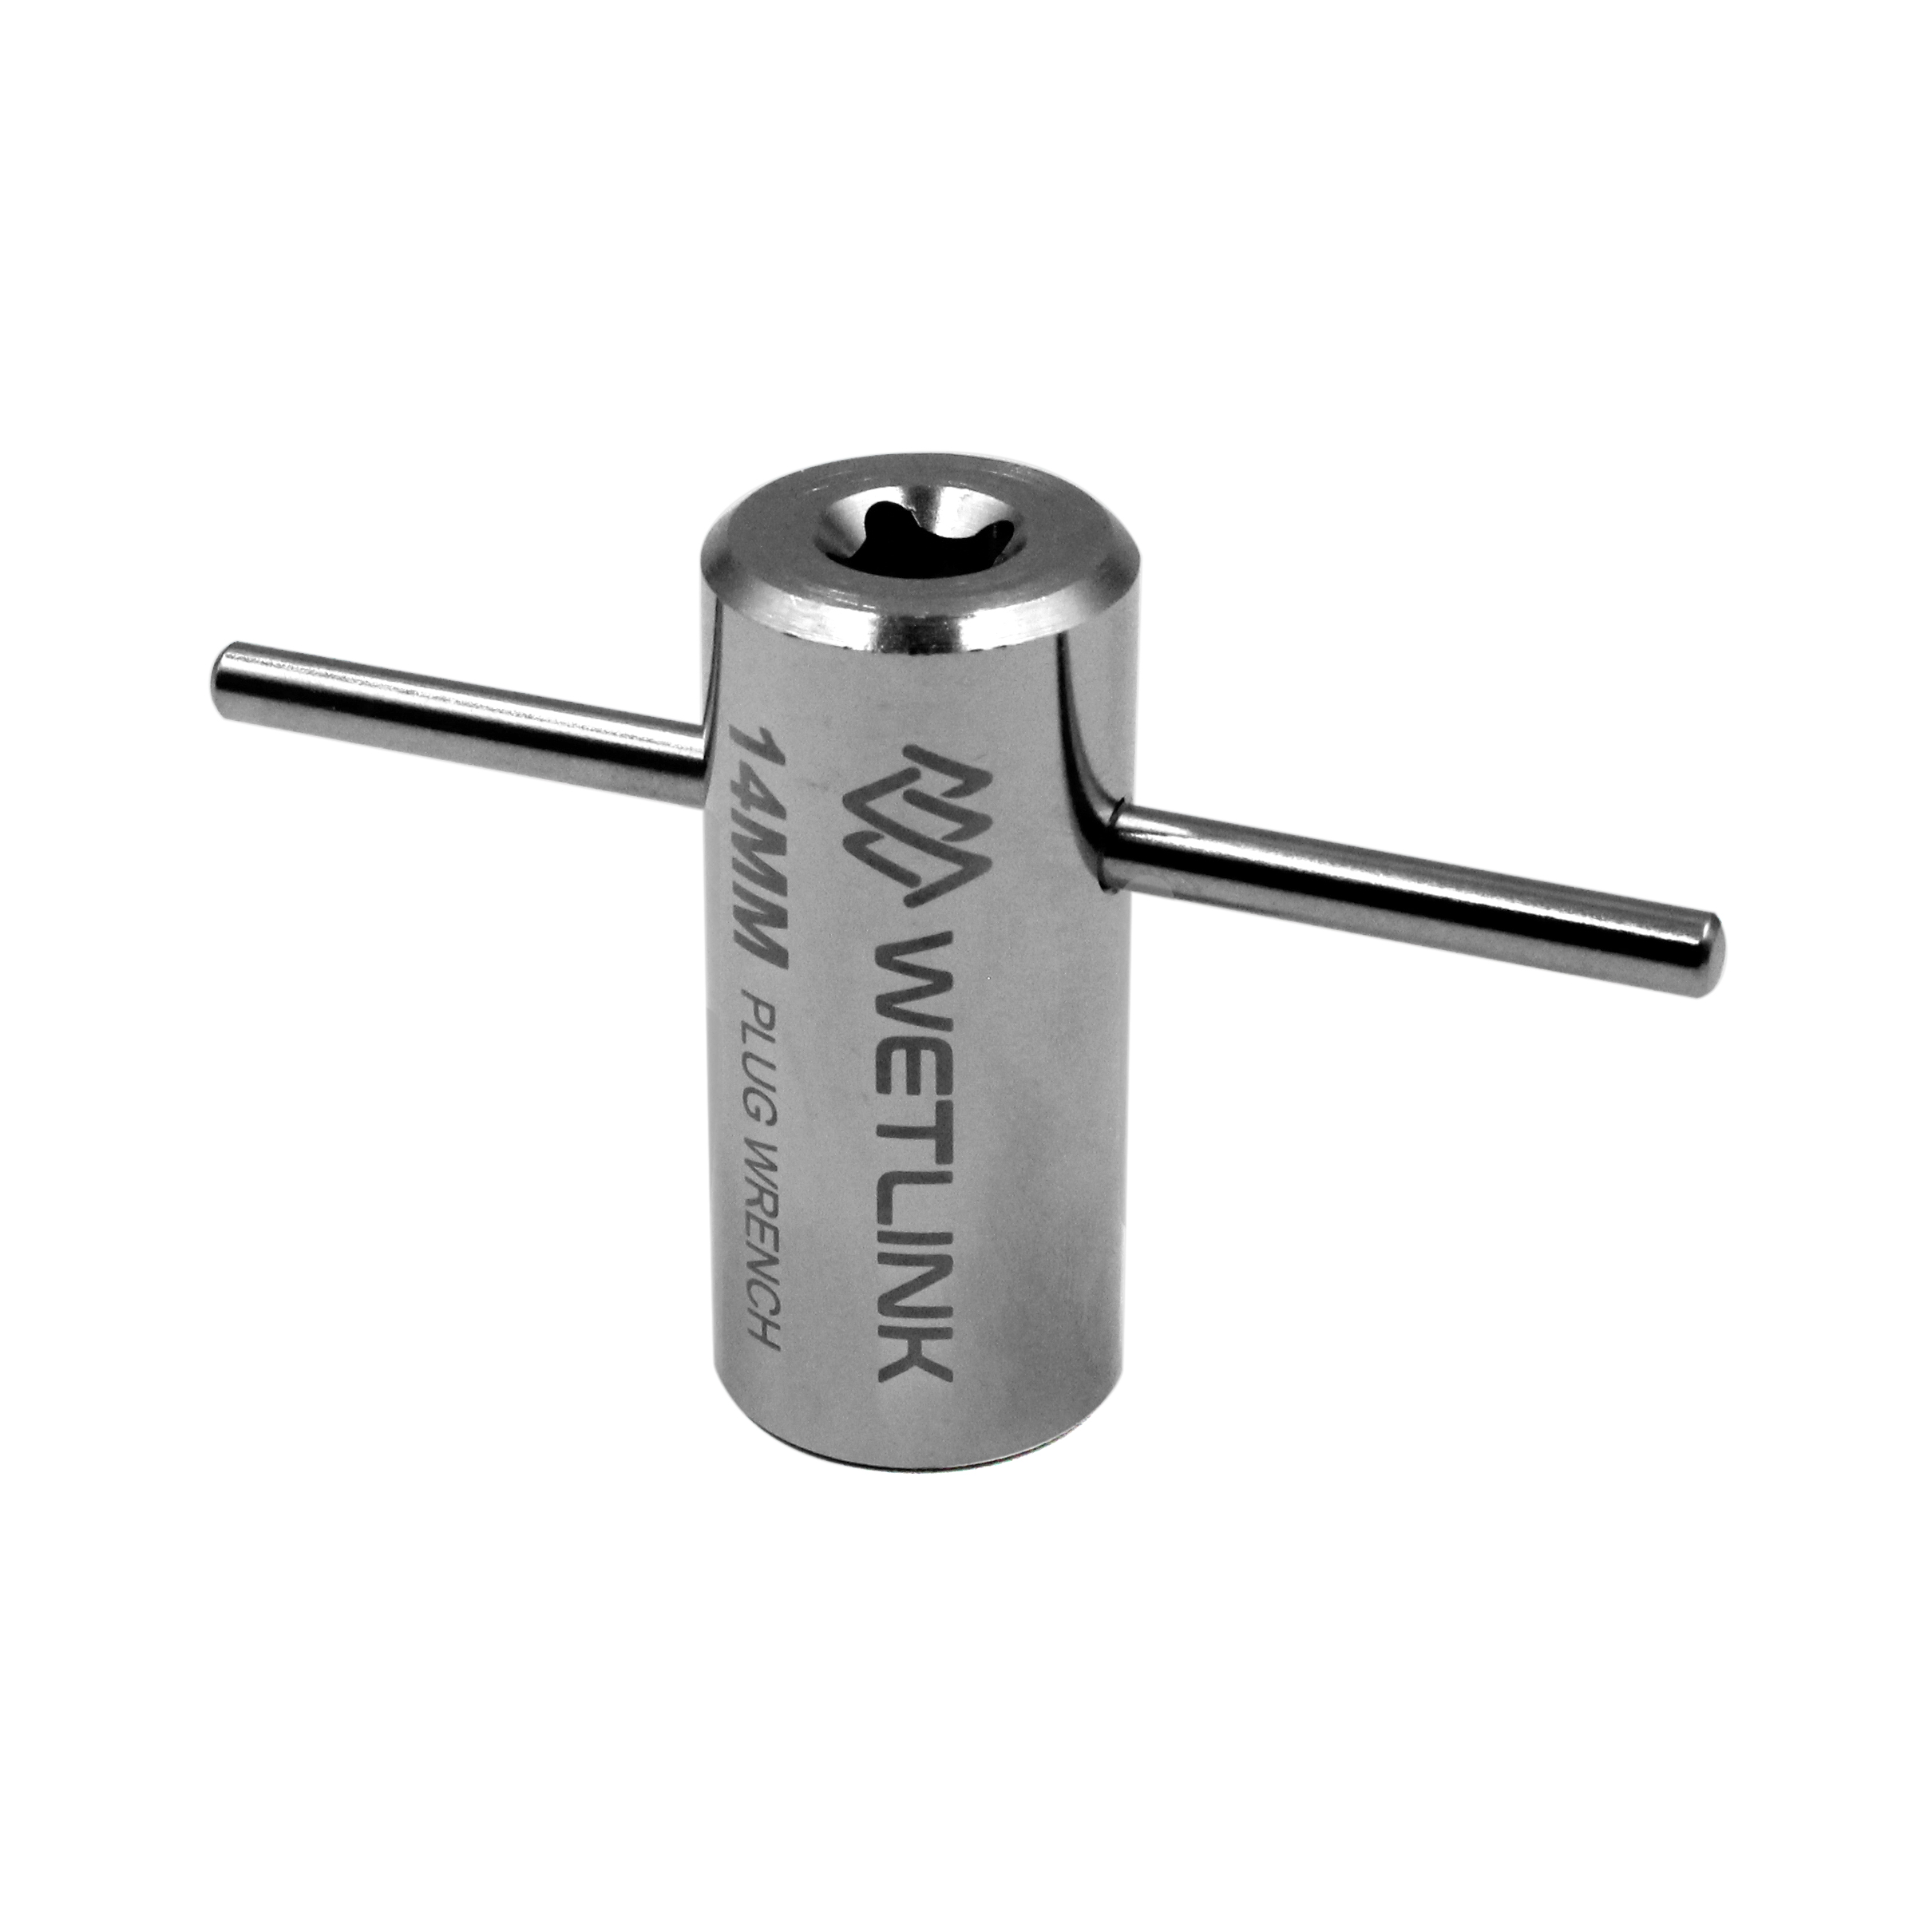  WetLink Penetrator Plug Wrench 14mm